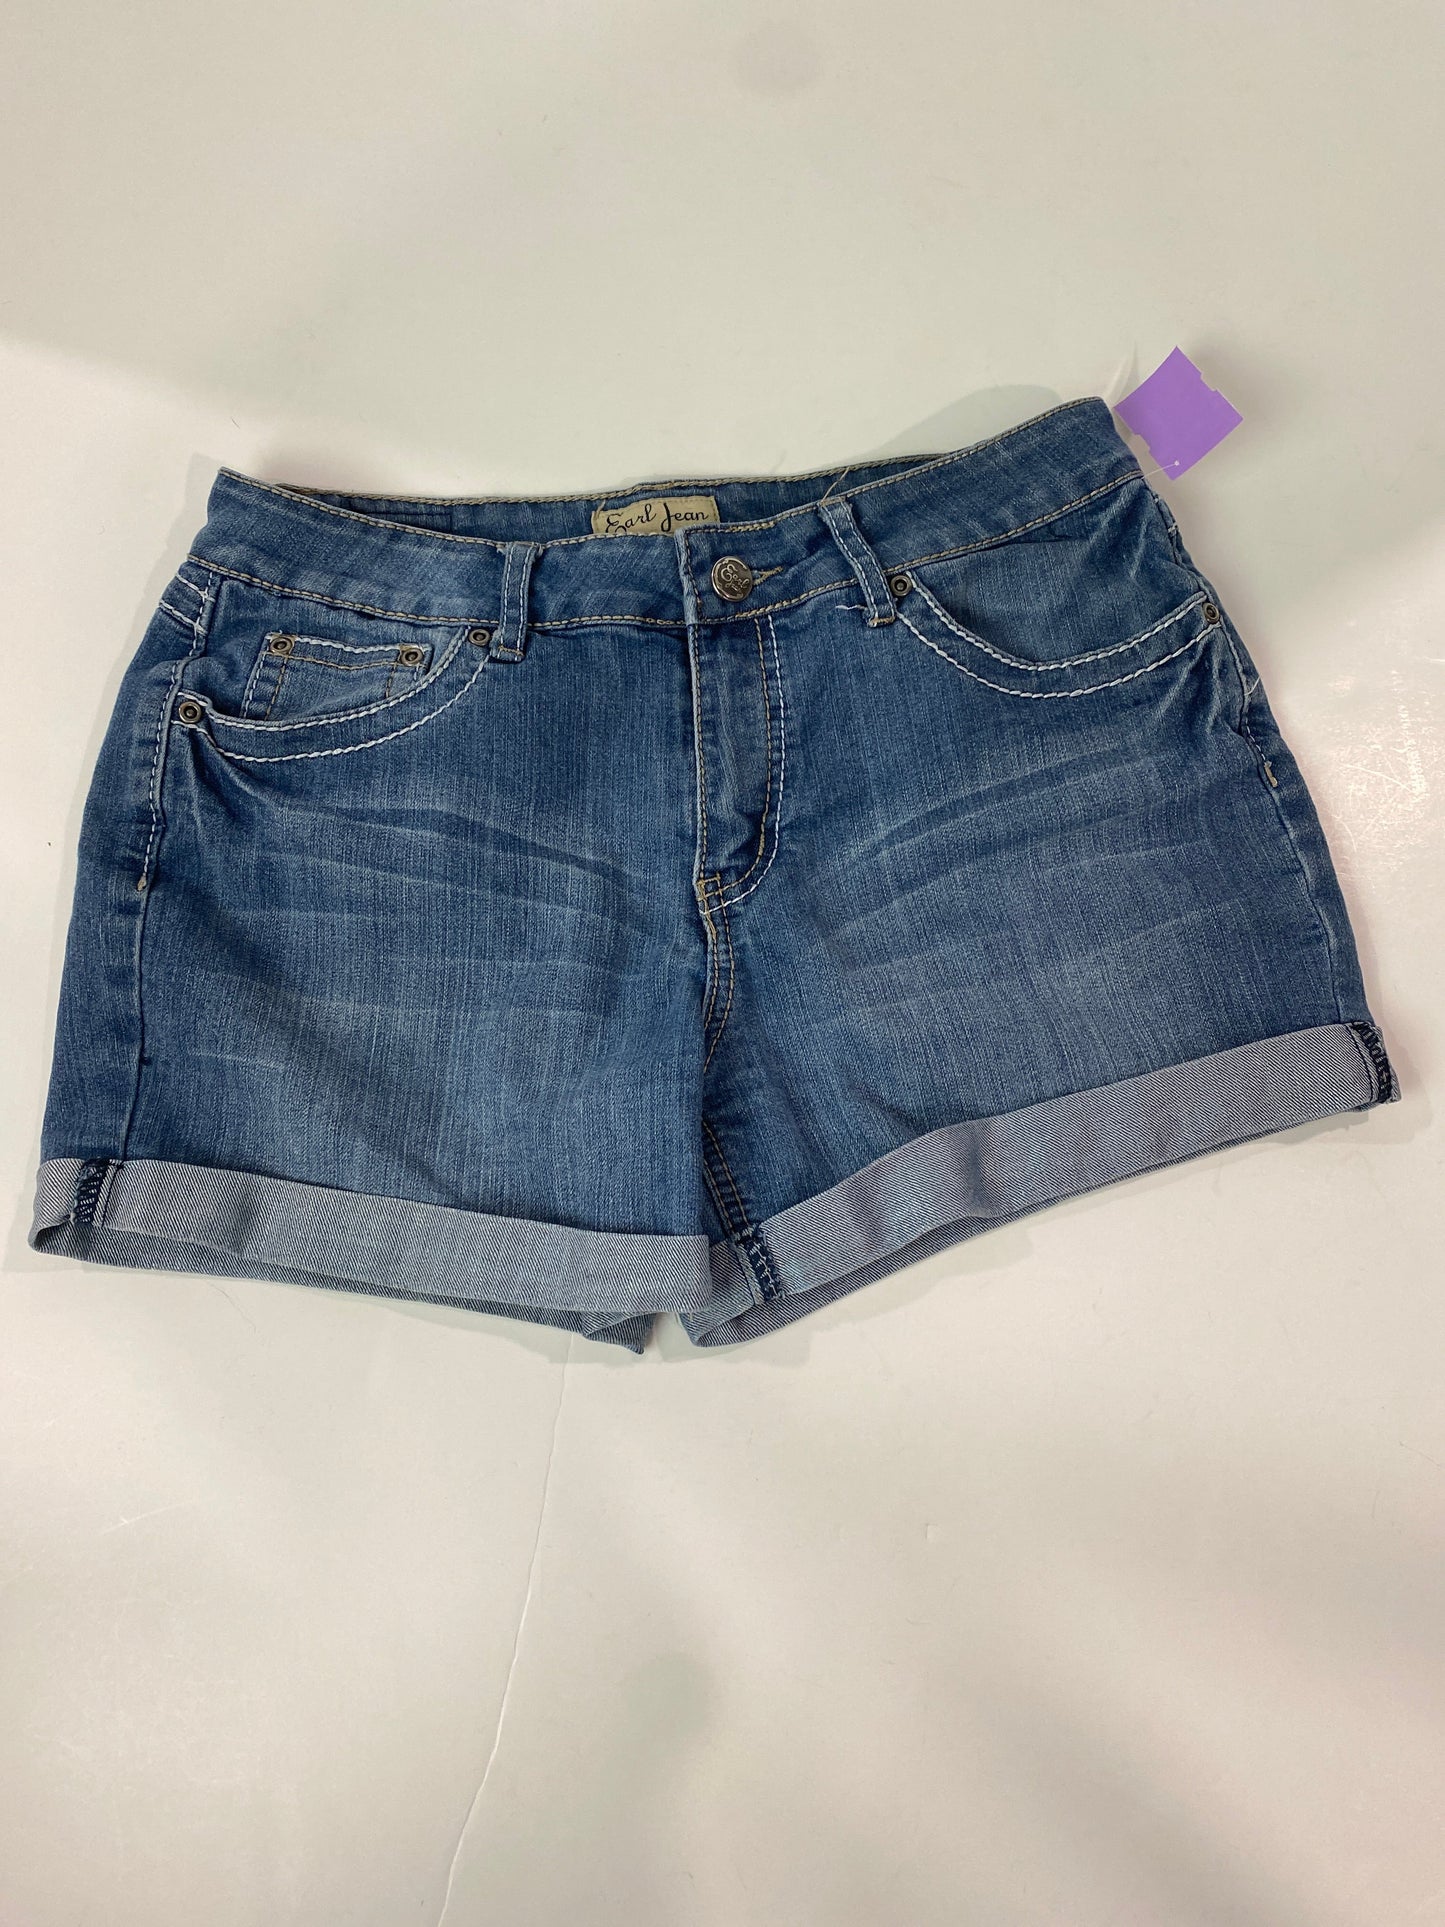 Blue Denim Shorts Earl Jean, Size 8